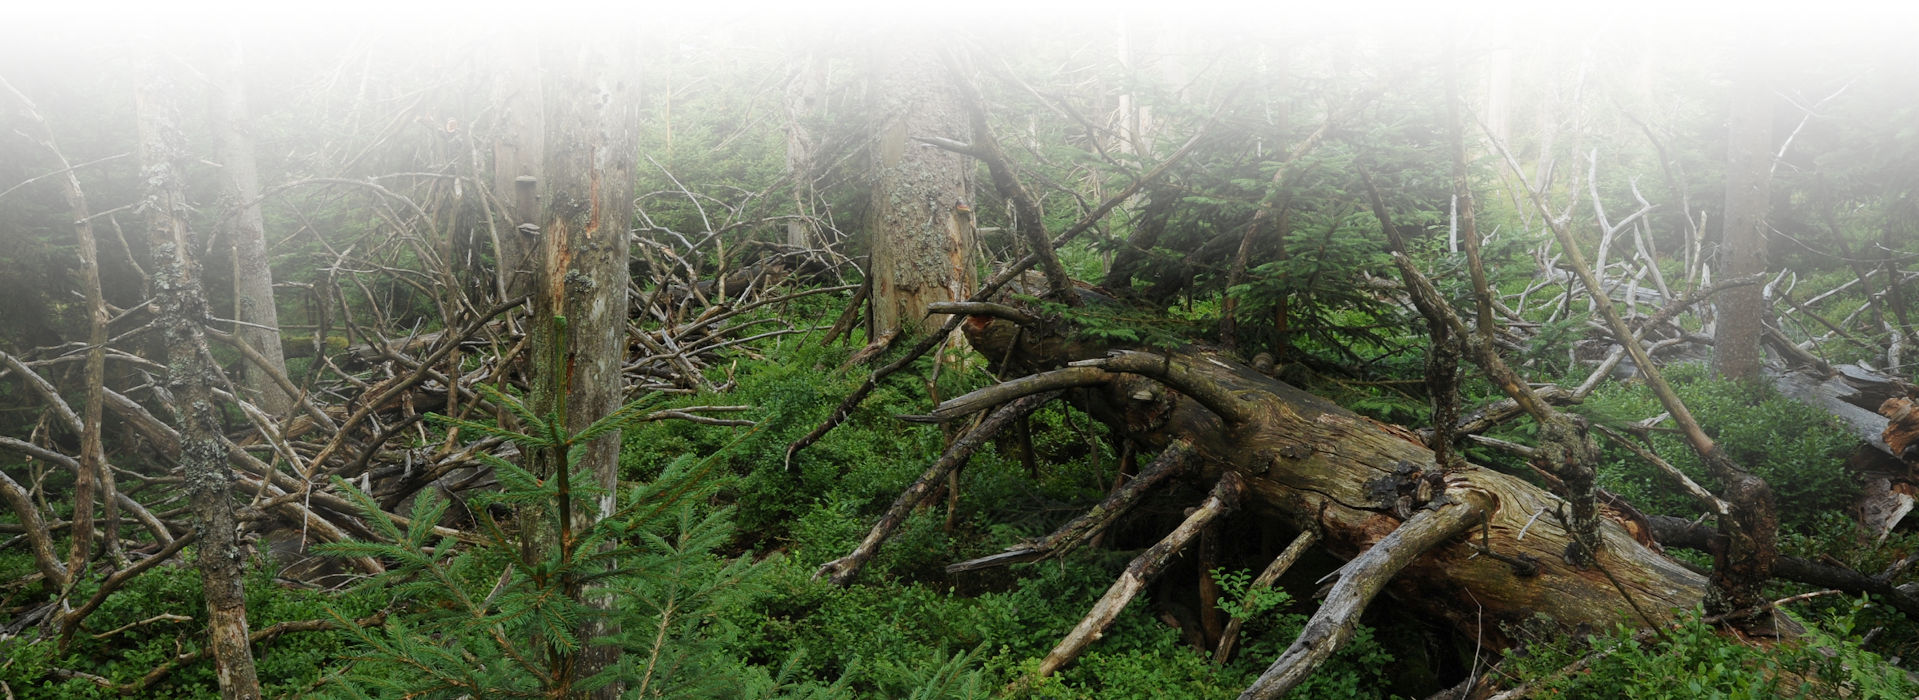 Sattgrünes Waldbild mit einigen abgestorbenen, kahlen und bemoosten stehenden und liegenden Bäumen.